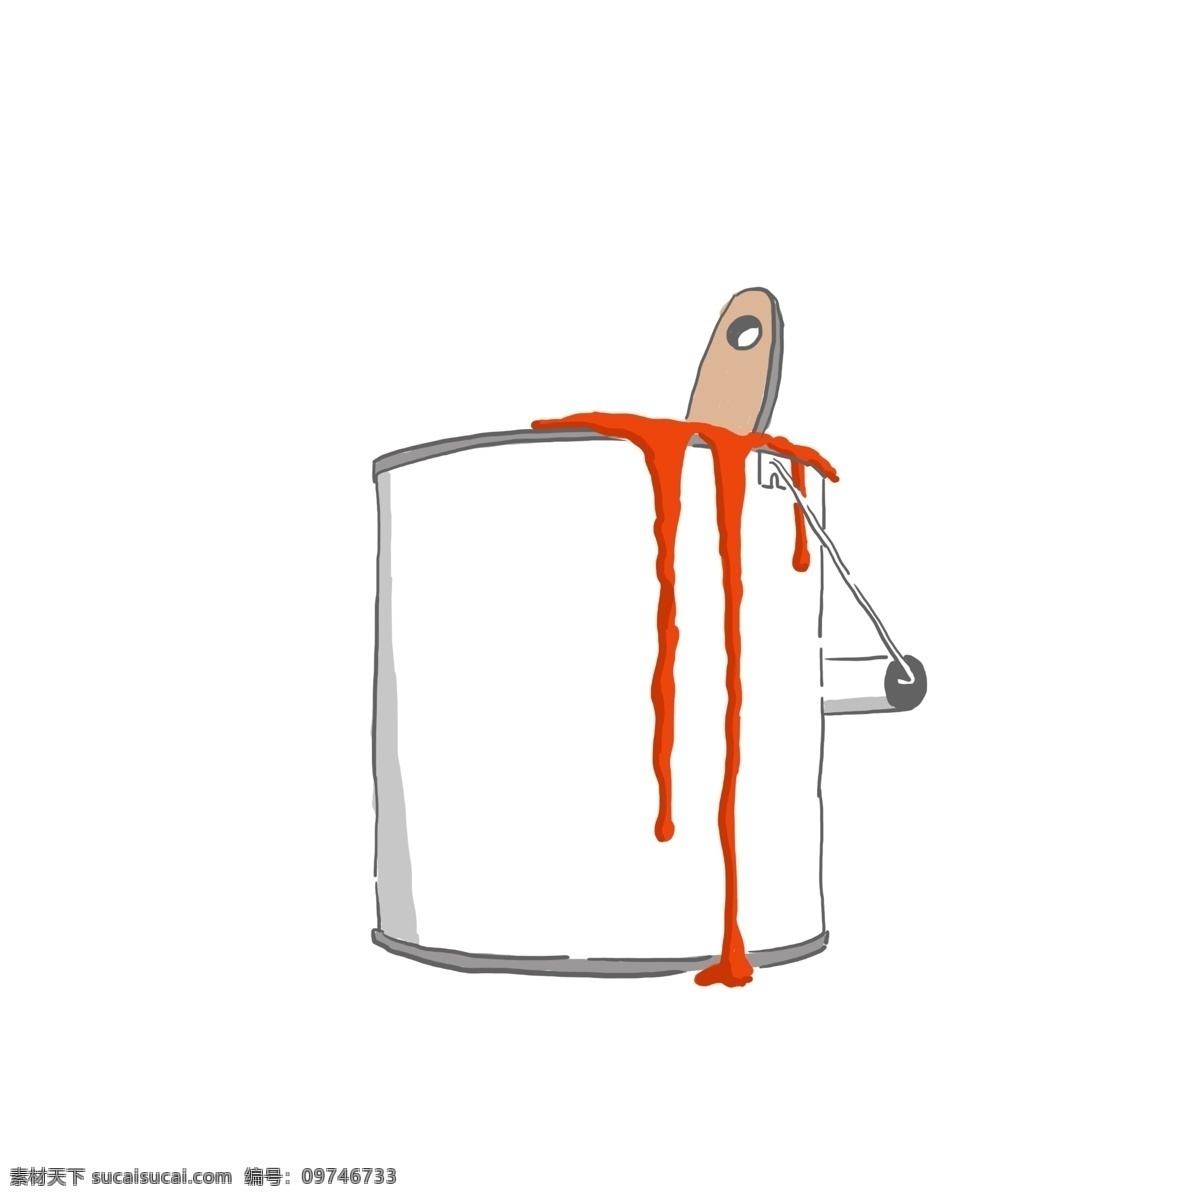 家装 节 橘 色 油漆桶 白色 橘色 家装节 装修 粉刷 粉刷装饰 粉刷图案 油漆桶装饰 油漆桶图案